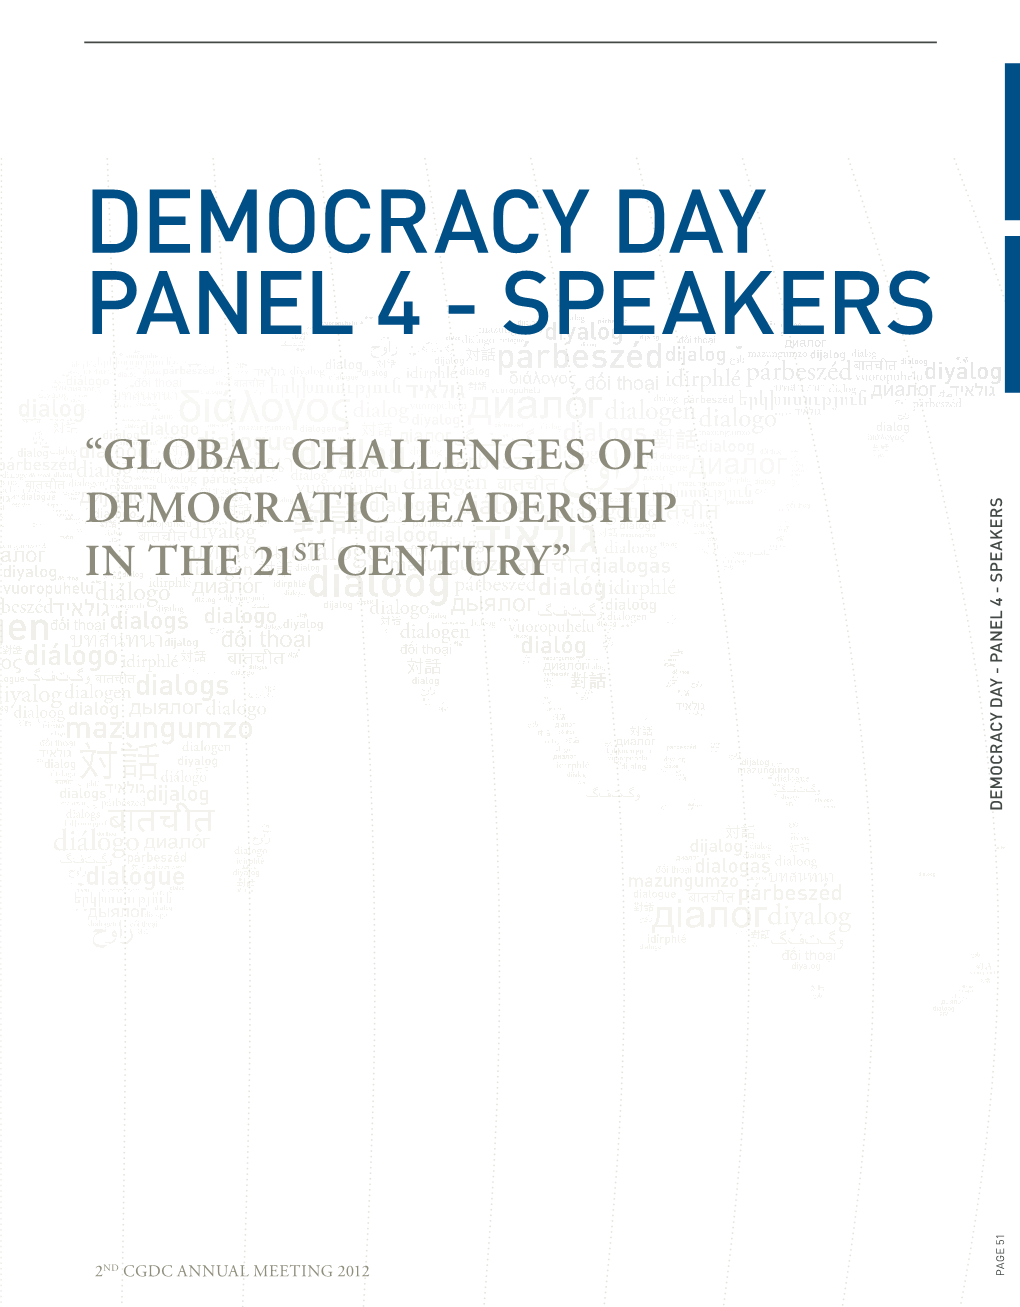 Democracy Day Panel 4 - Speakers